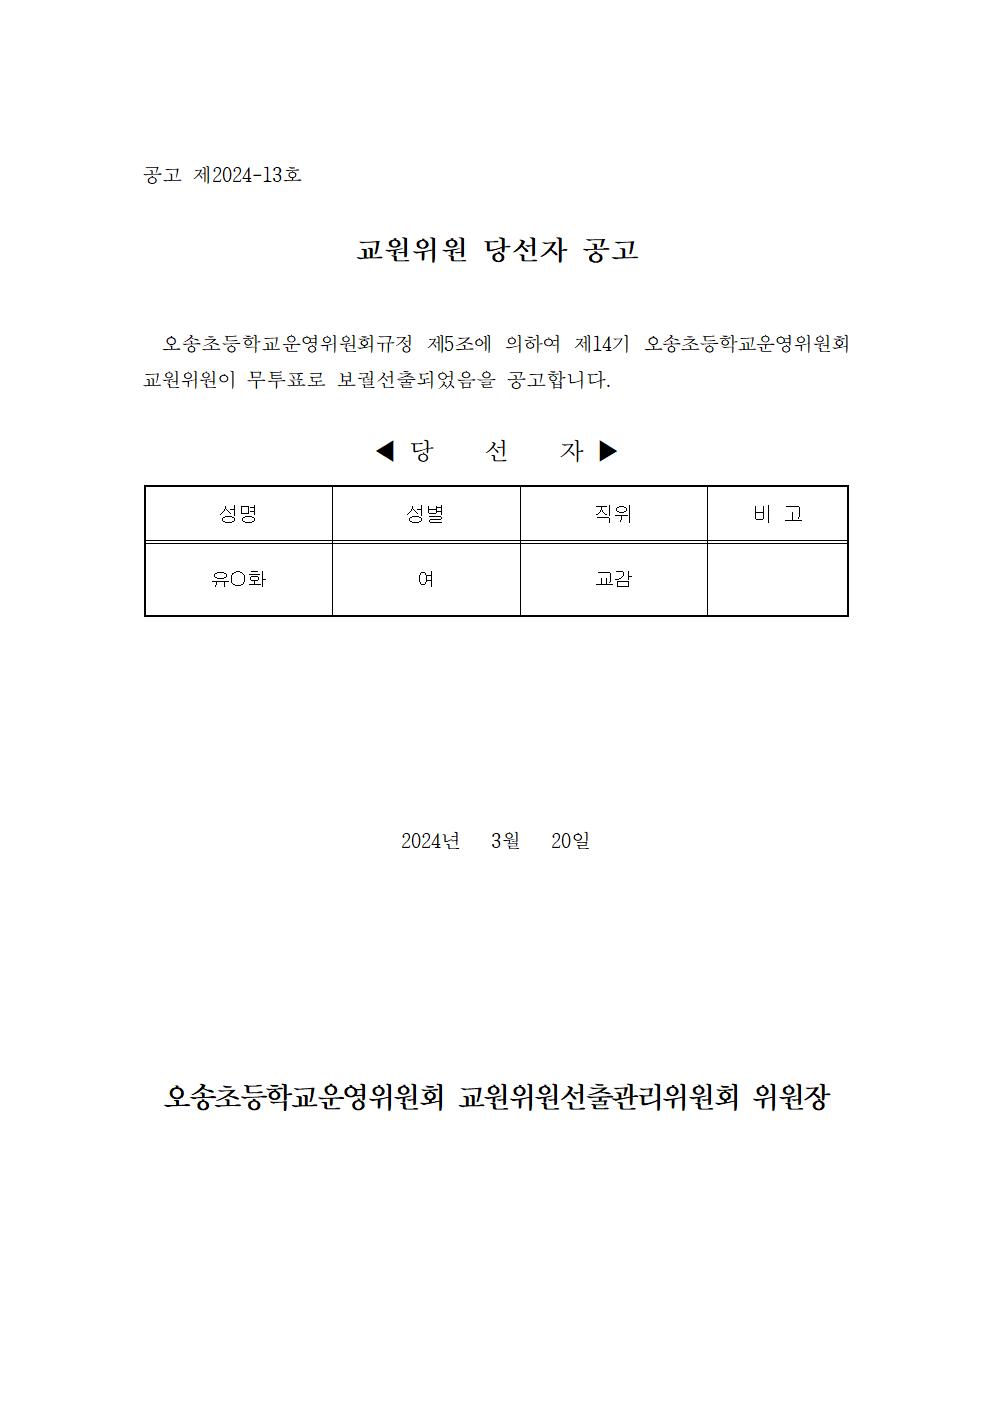 4-1. 선거당선공고문(교원)-게시001